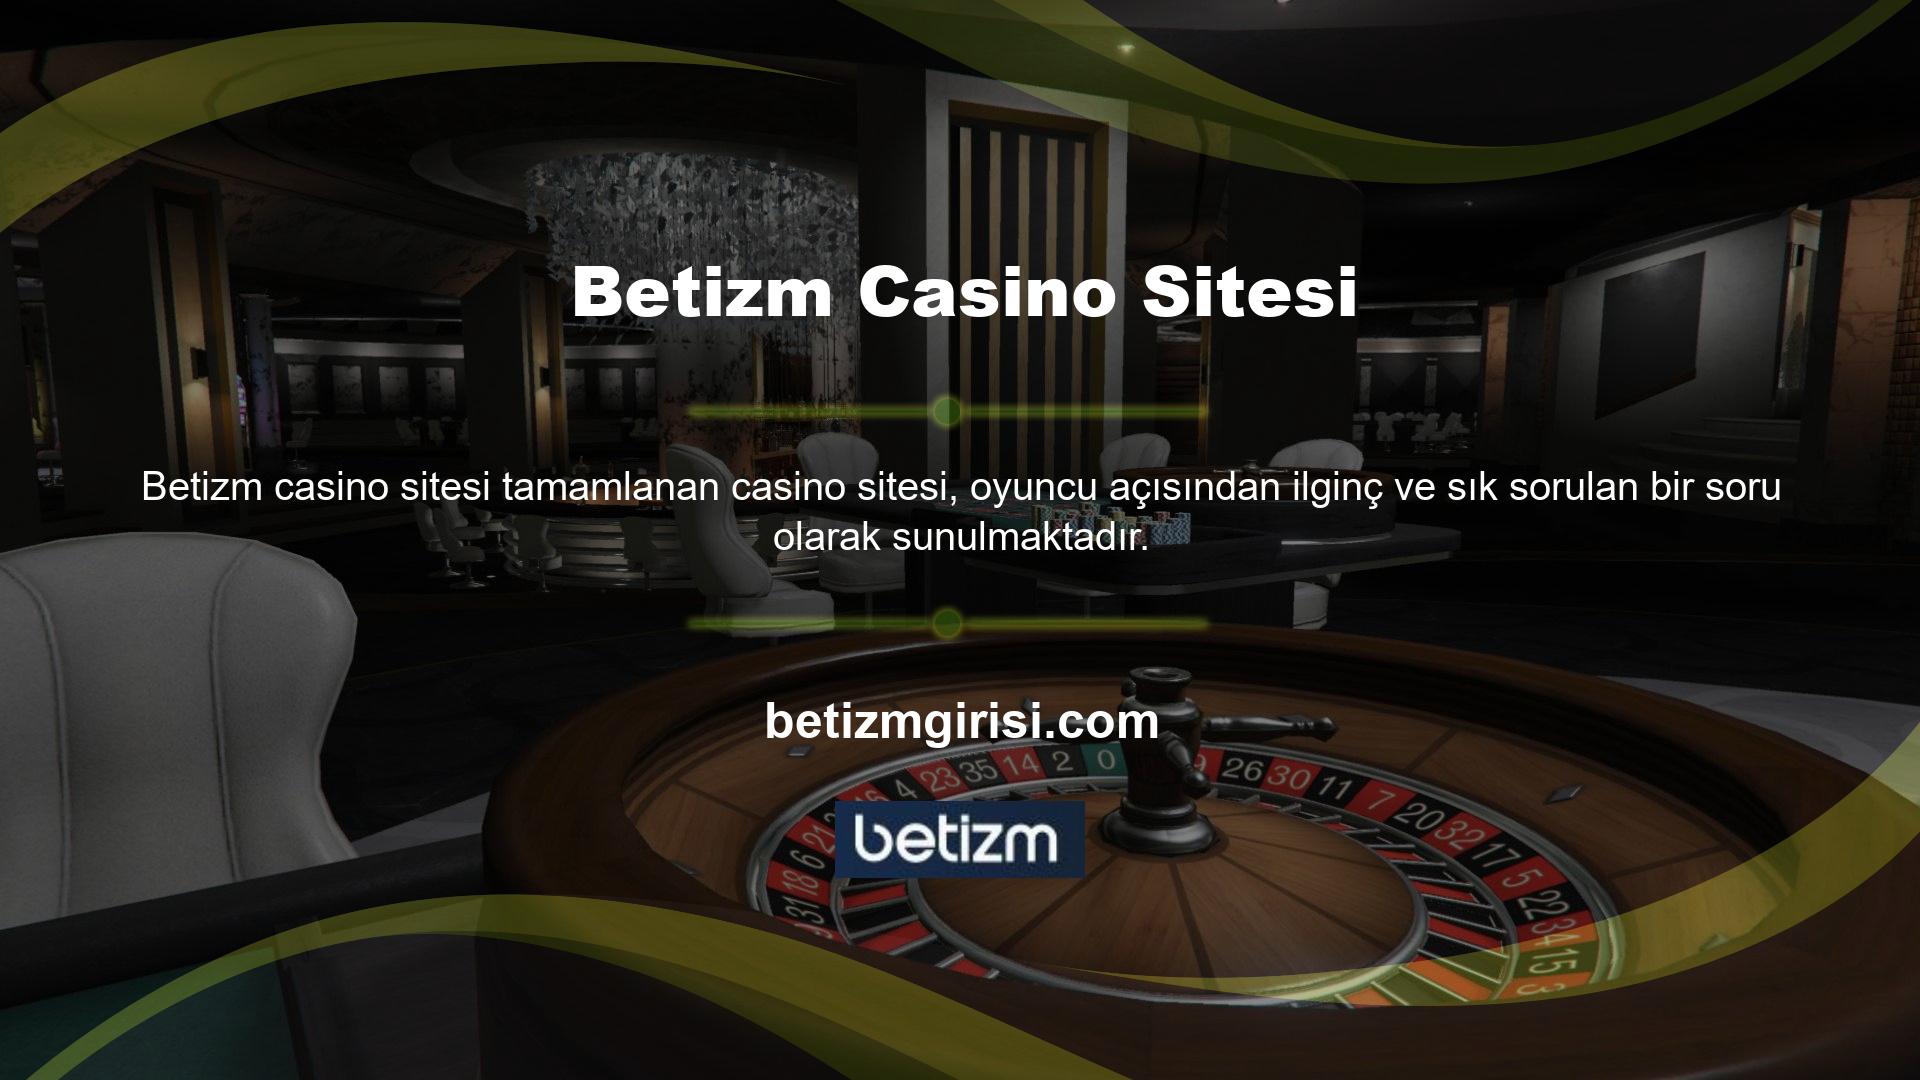 Online casino sektörü o kadar iyi bilinmektedir ki kullanıcıların bu konulardan haberdar olması doğaldır